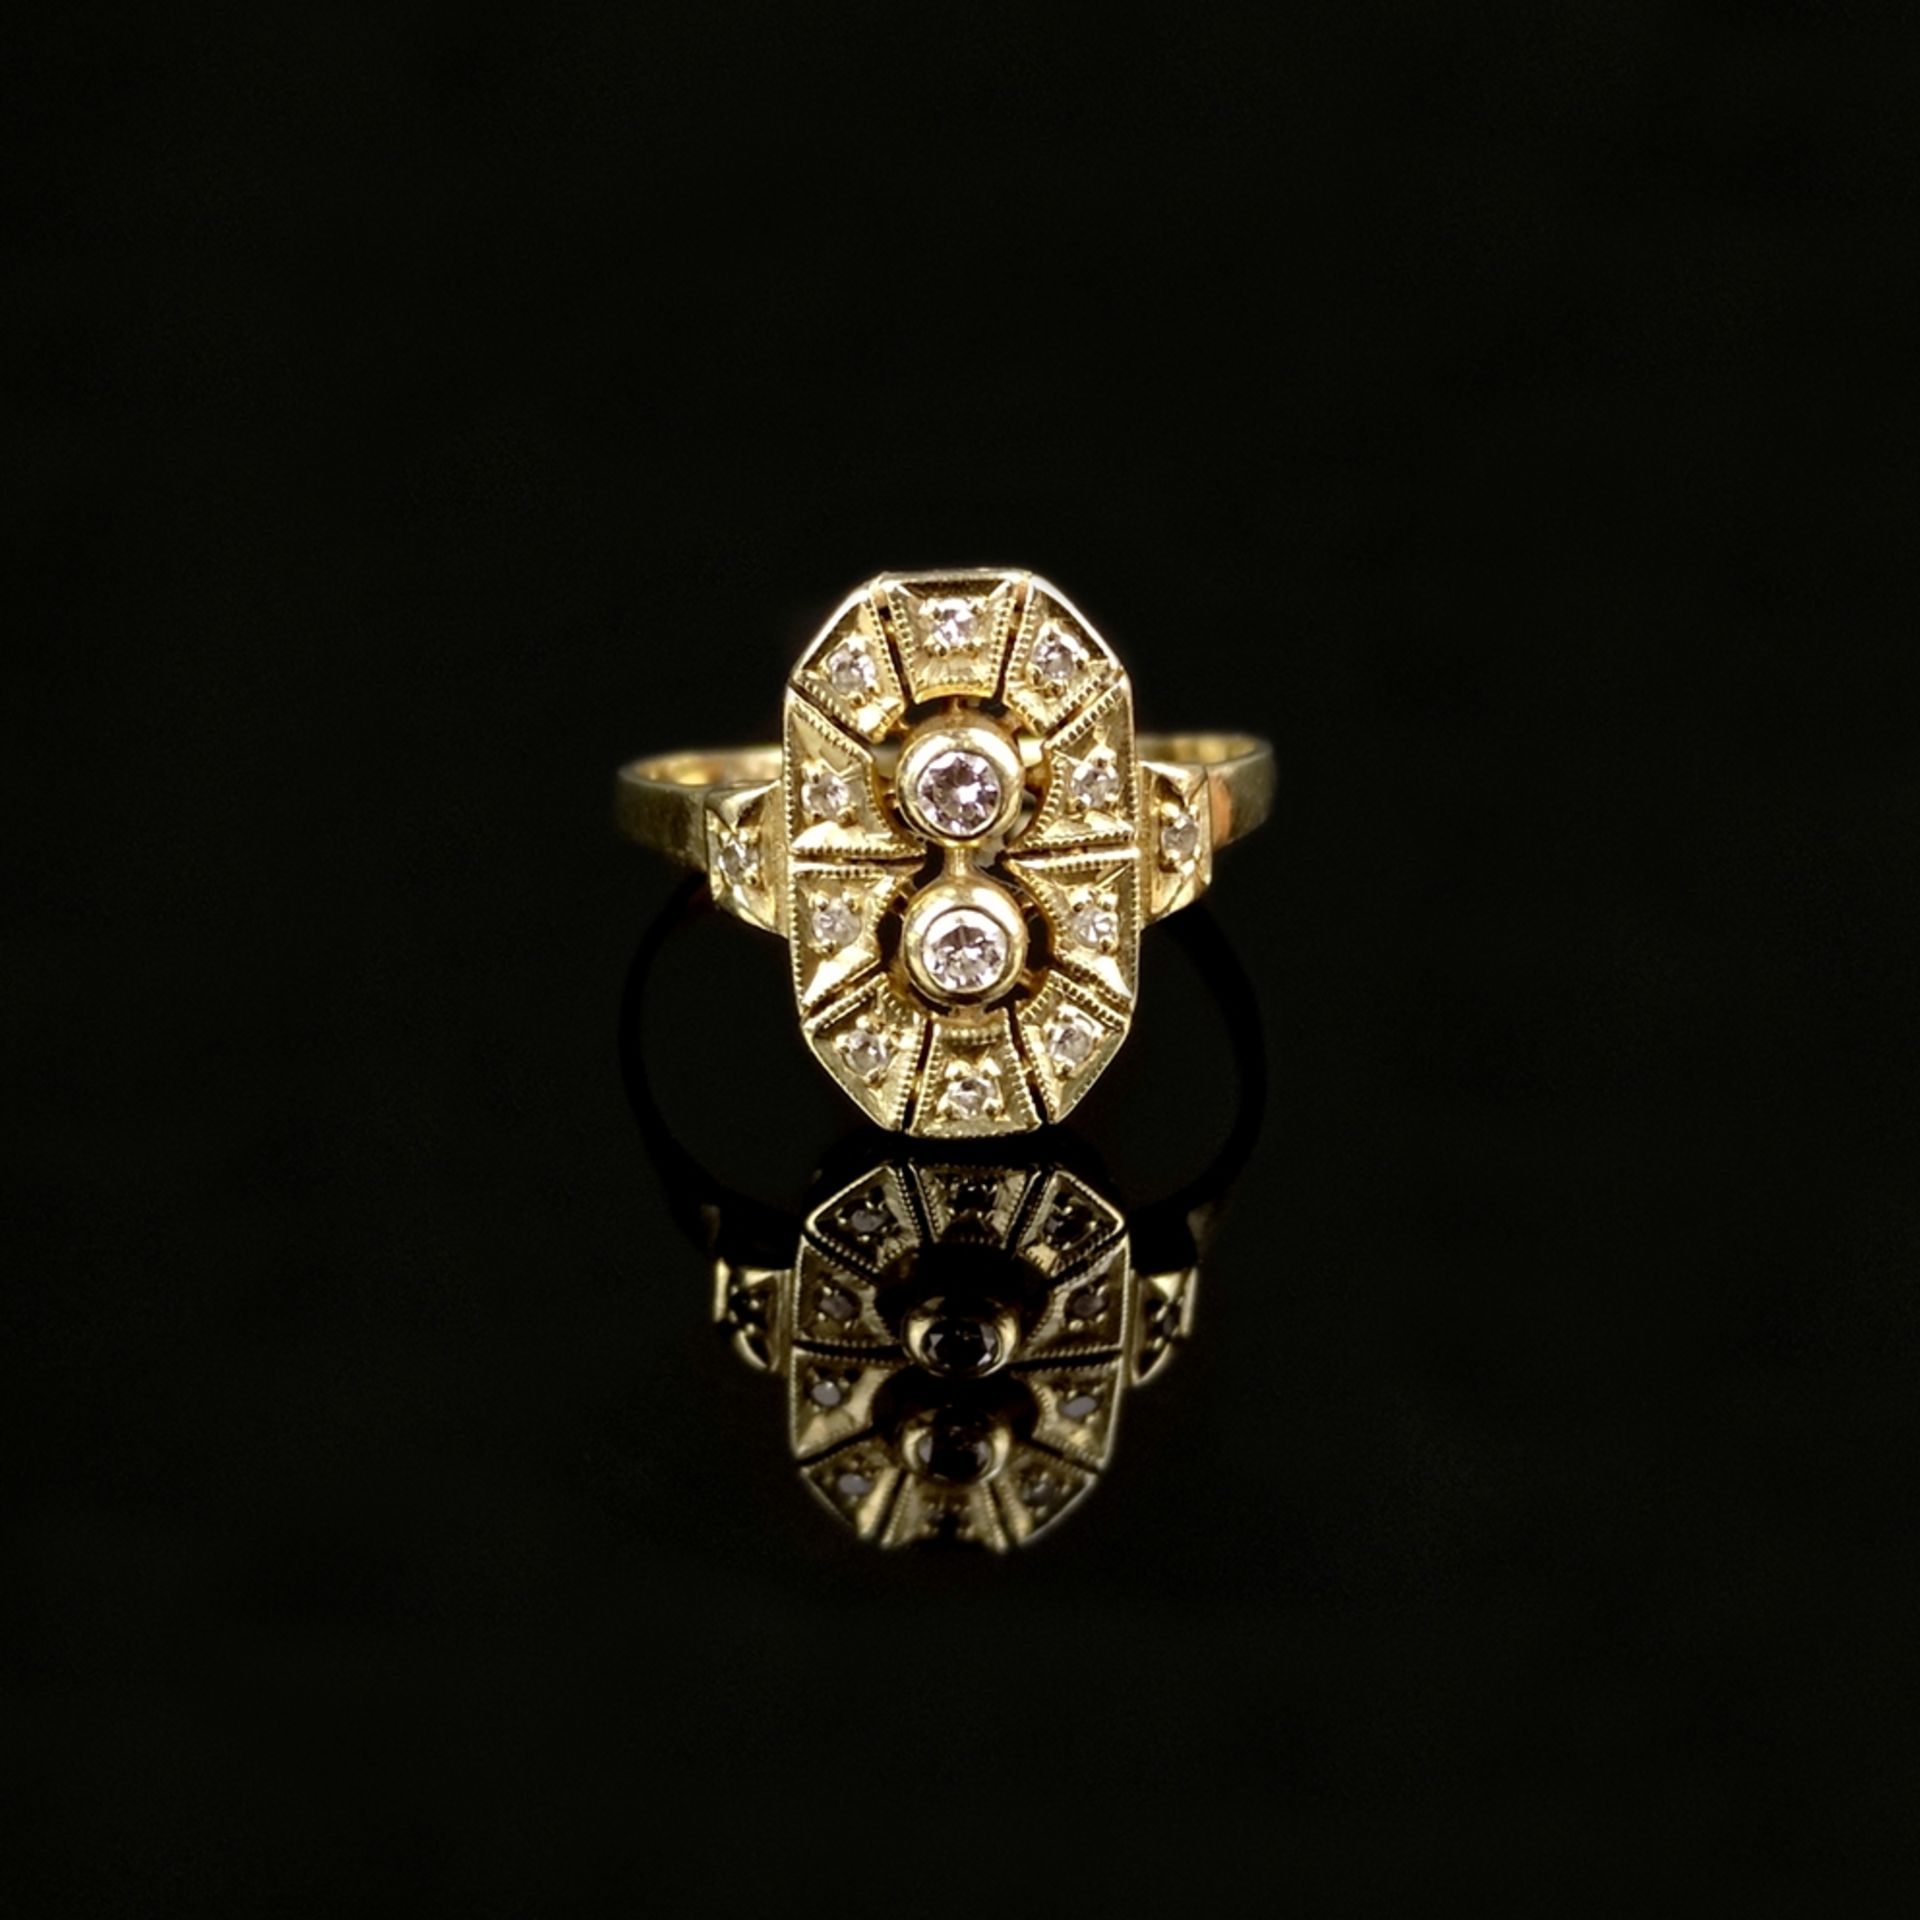 Art Deco Ring, 585/14K Gelbgold (punziert), 3g, oktagonaler, durchbrochen gearbeiteter Ringkopf mit - Bild 2 aus 3